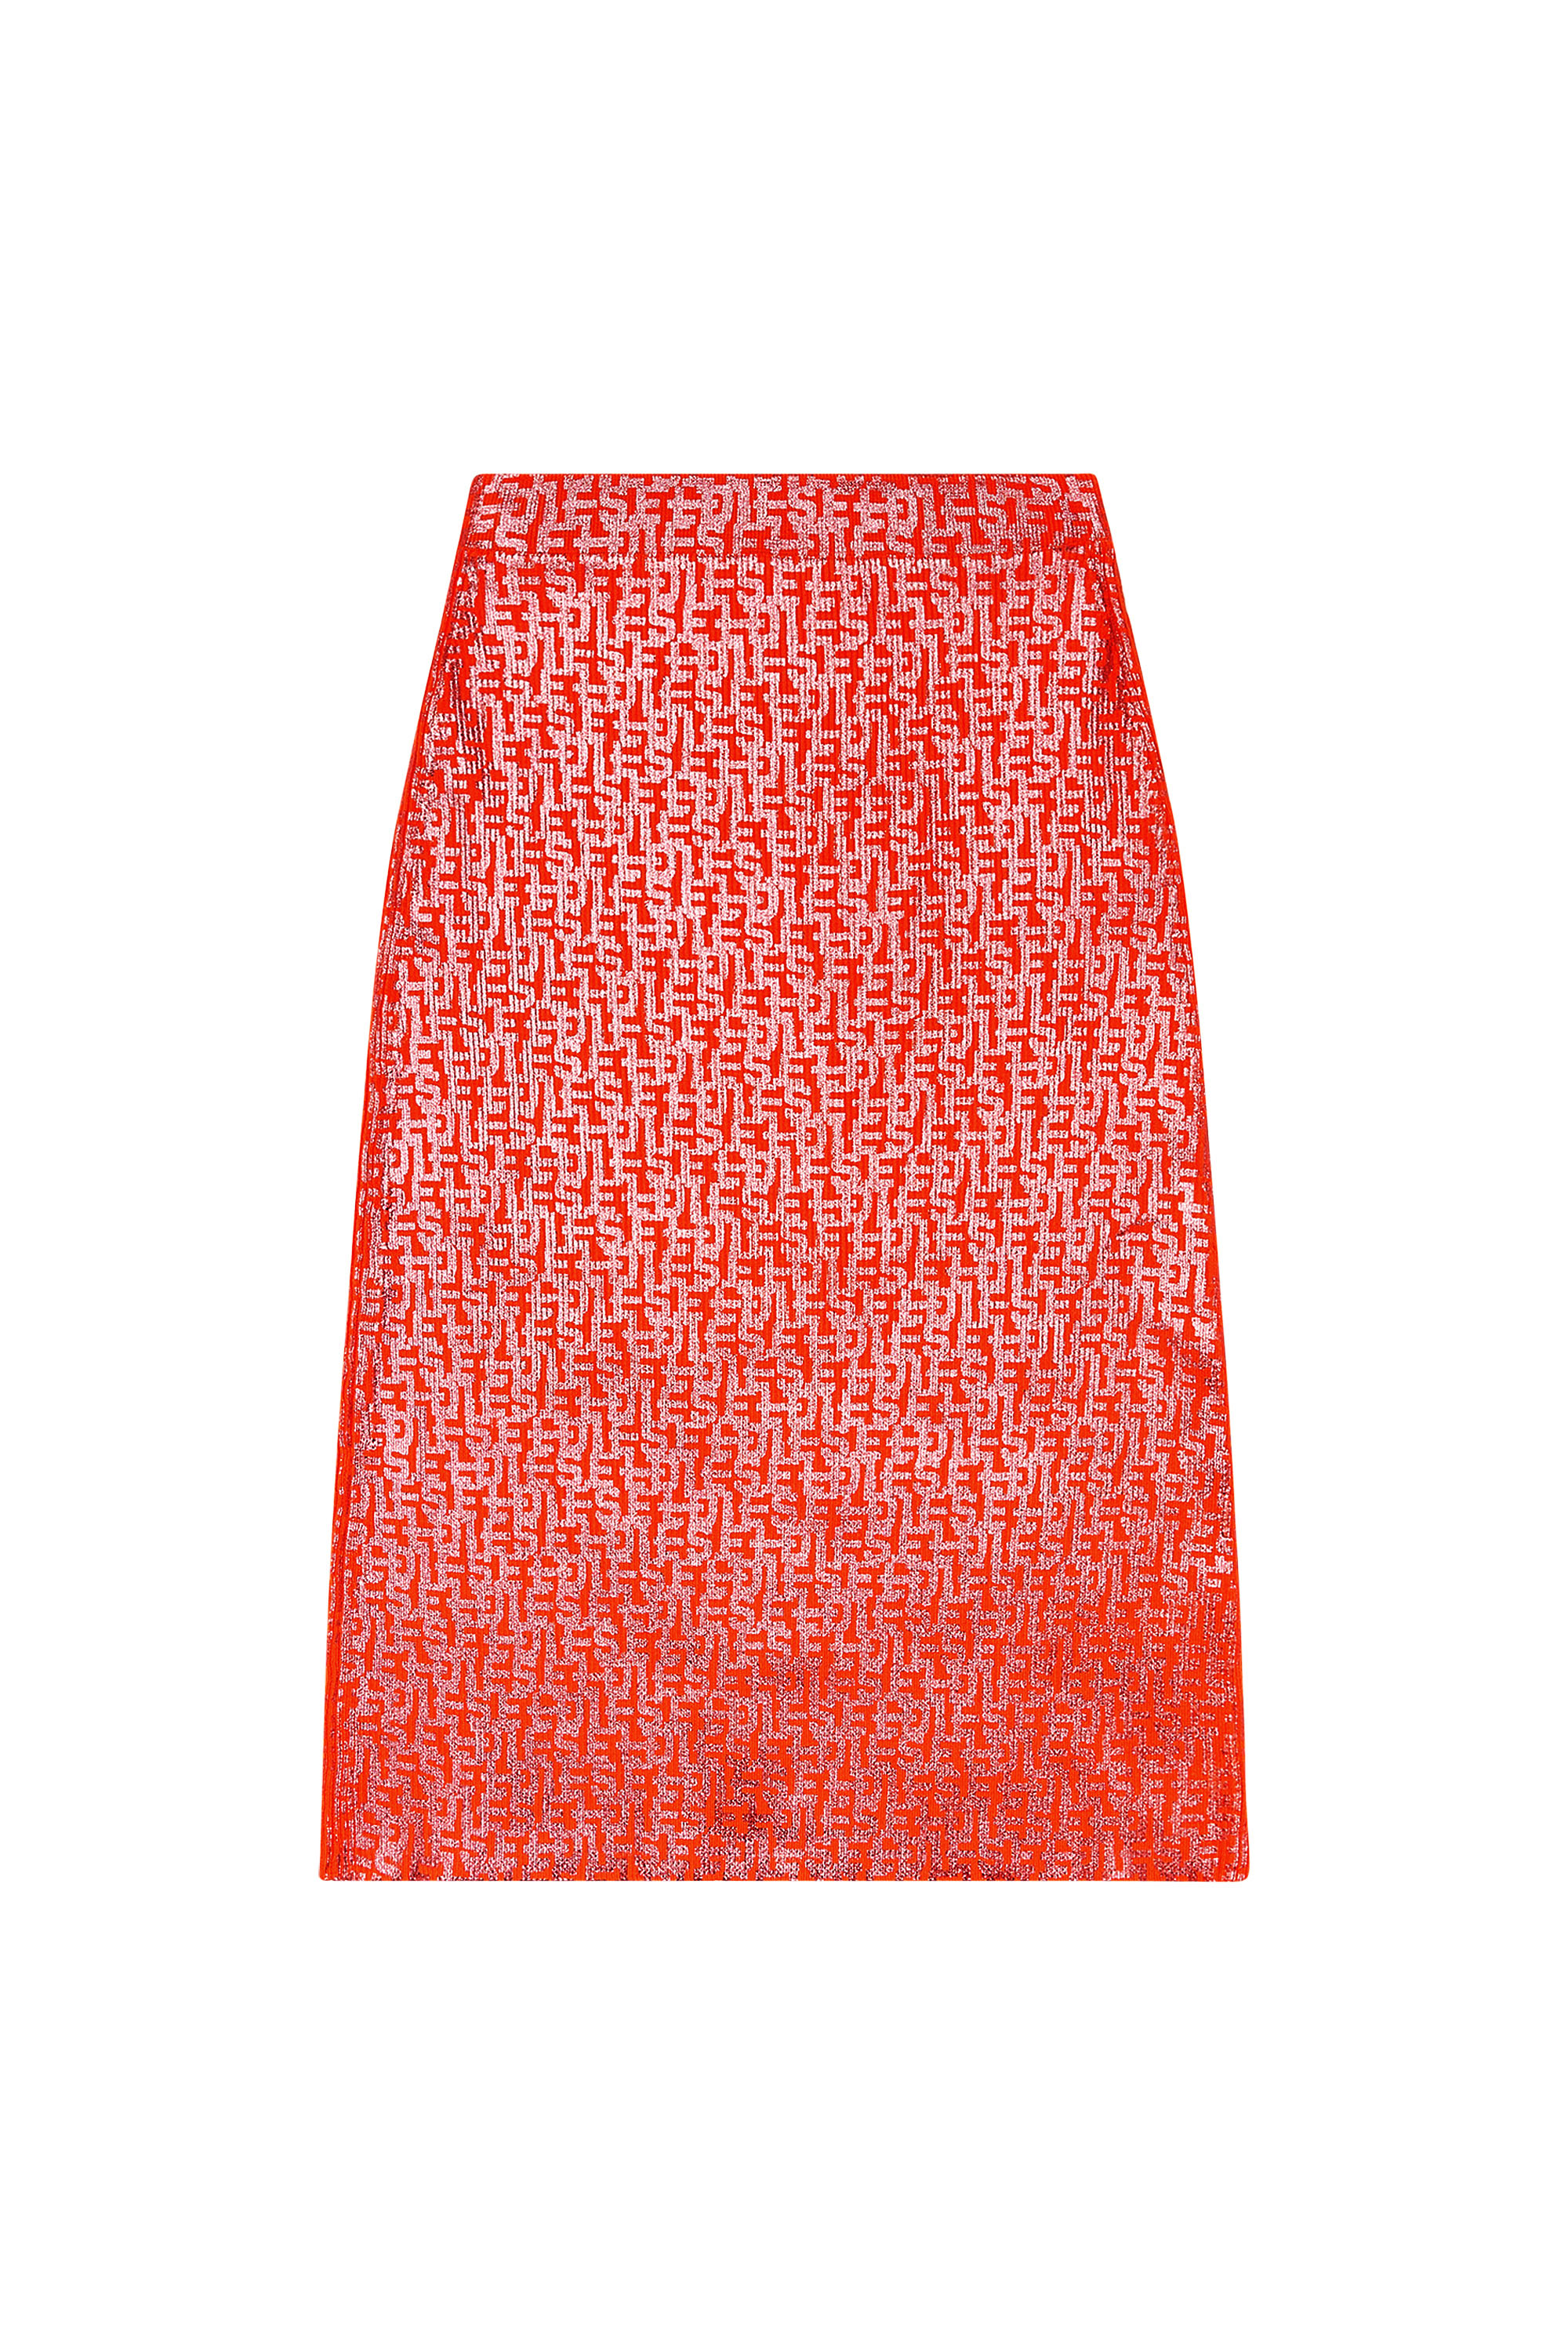 Vintage Monogram Mini Skirt - Ready to Wear